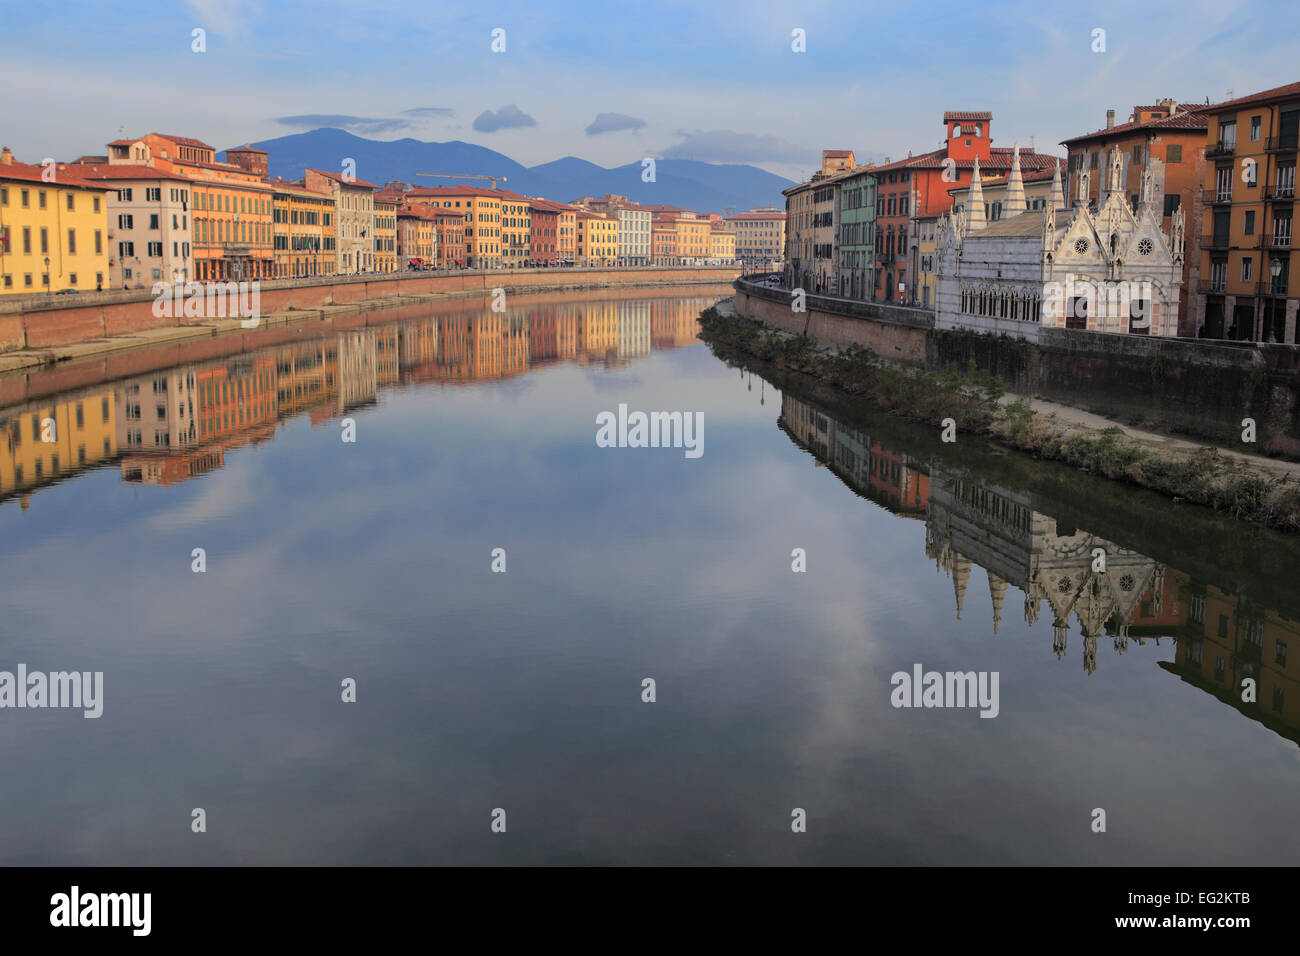 Arno river, Pisa, Tuscany, Italy Stock Photo